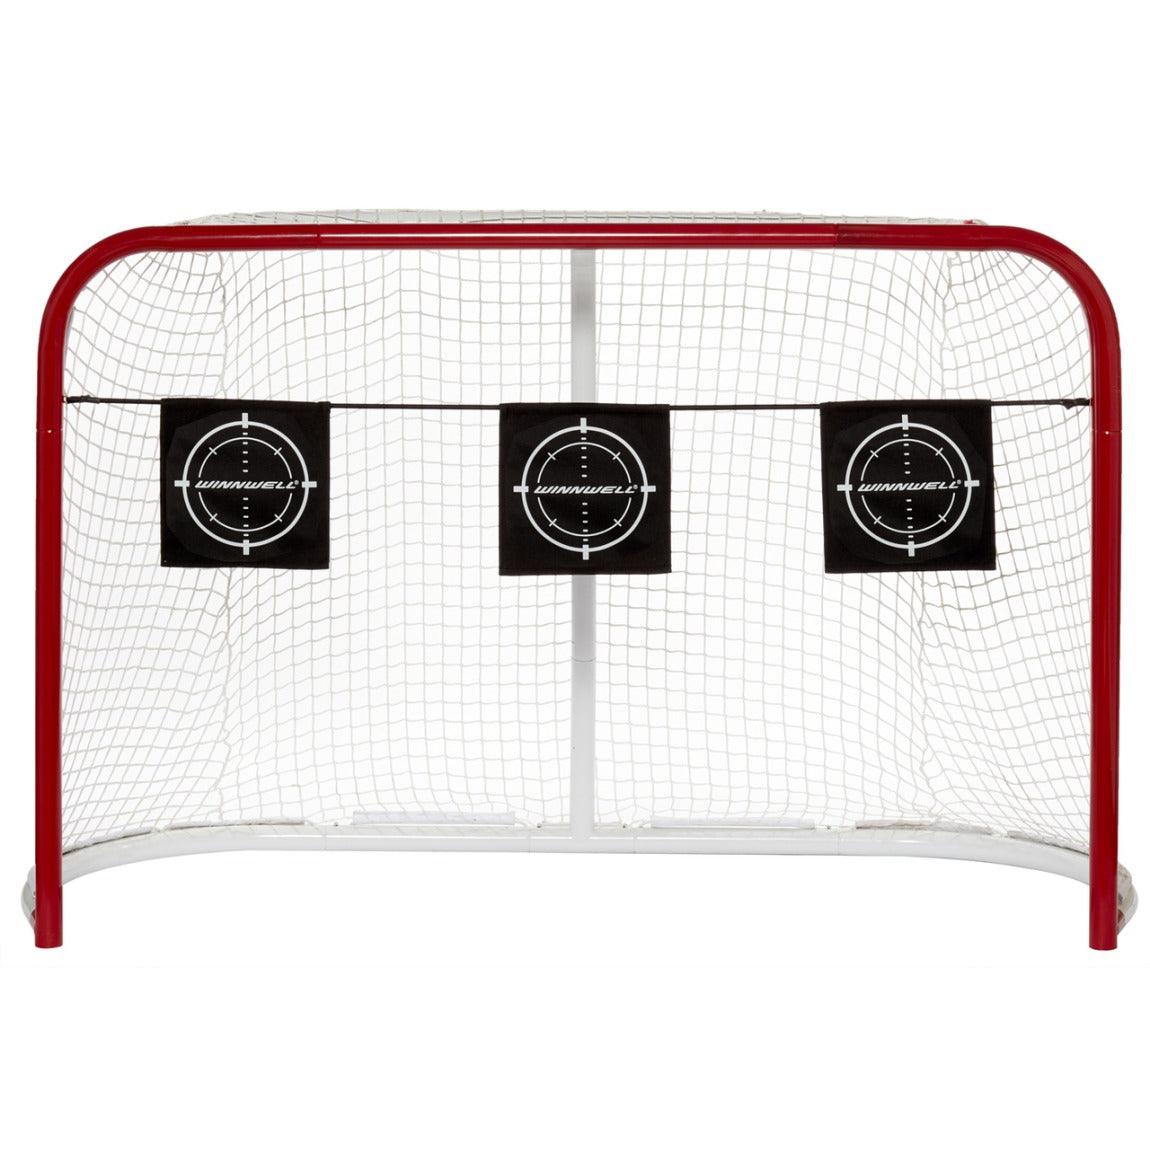 Cible de tir à l'élastique de hockey – Sports Excellence